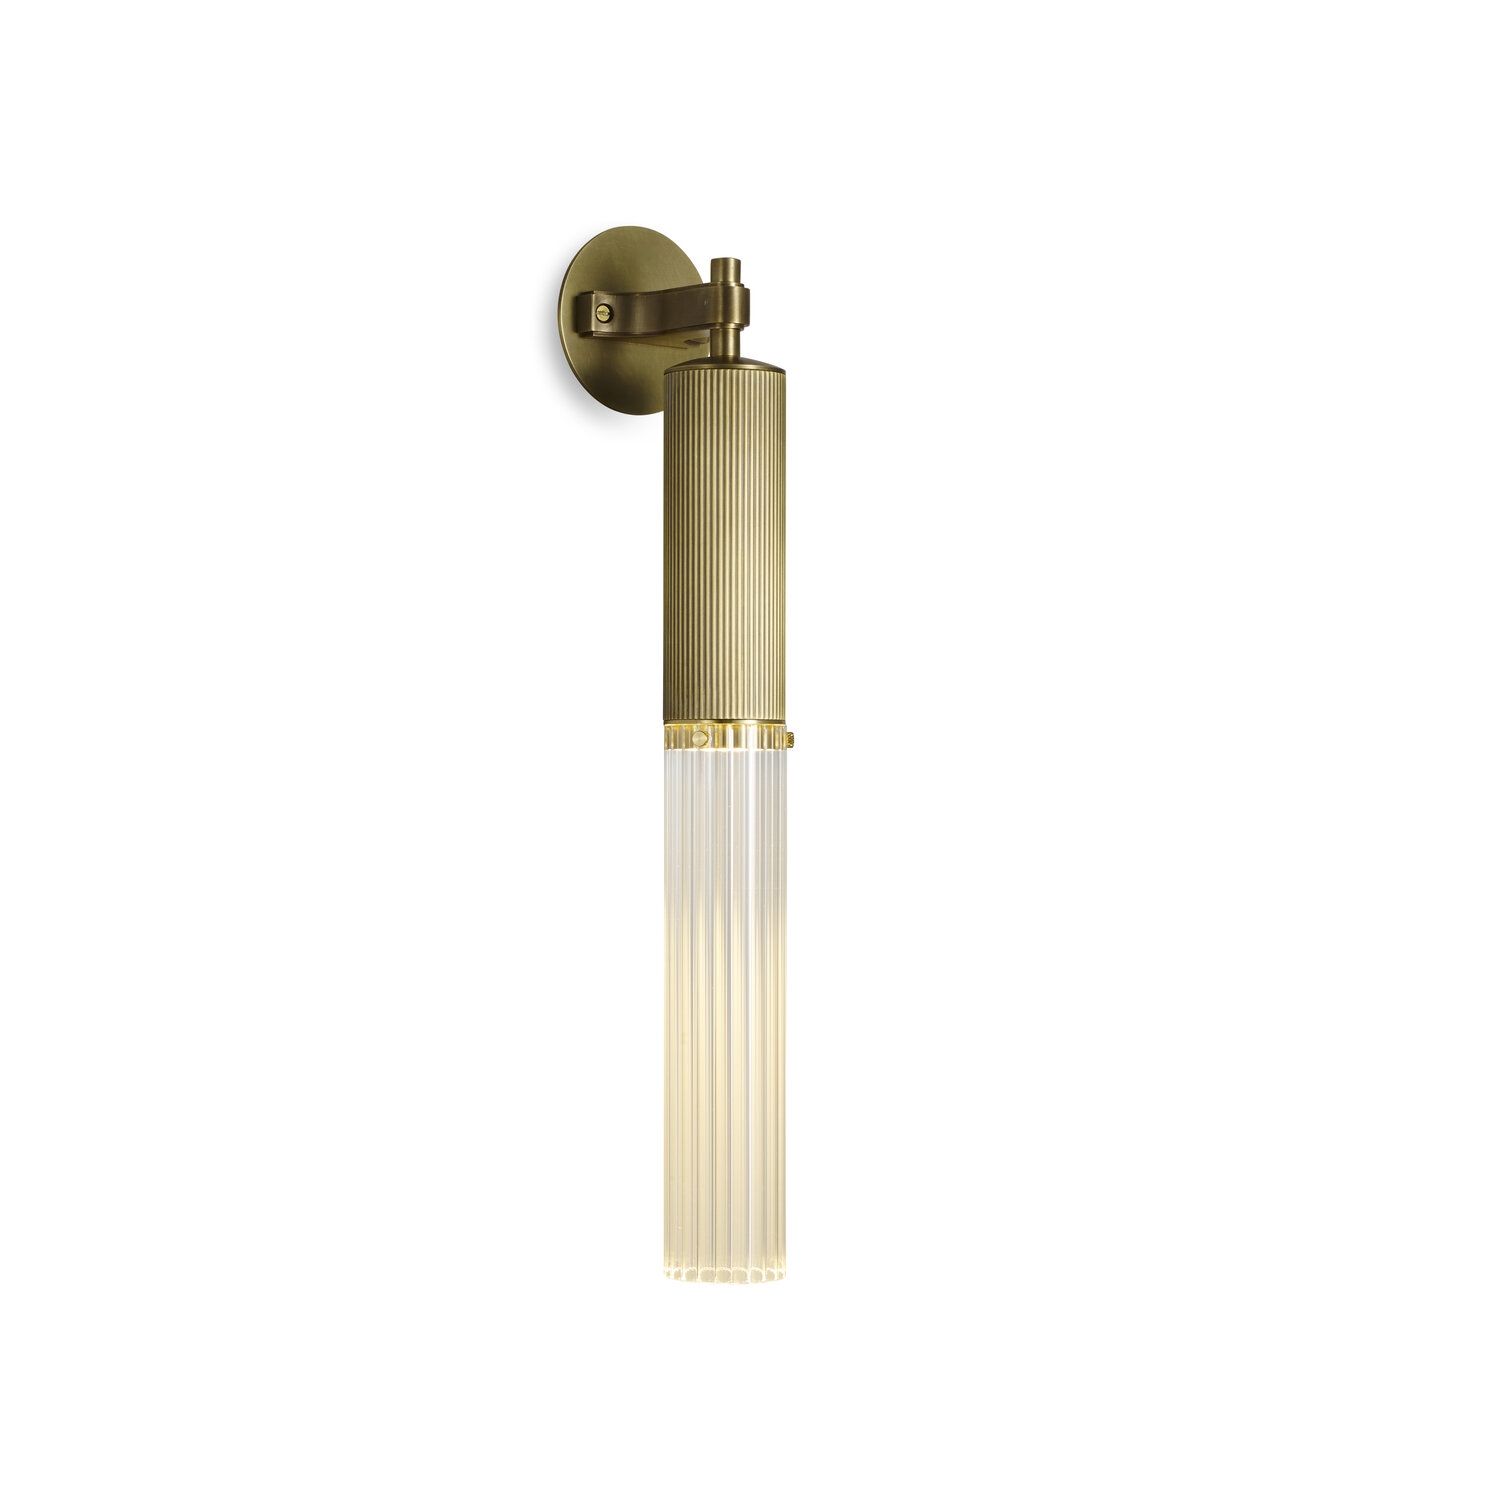 J Adams & Co – Flume Wall Light Fixture – LED – Brass Colour – Brass Material